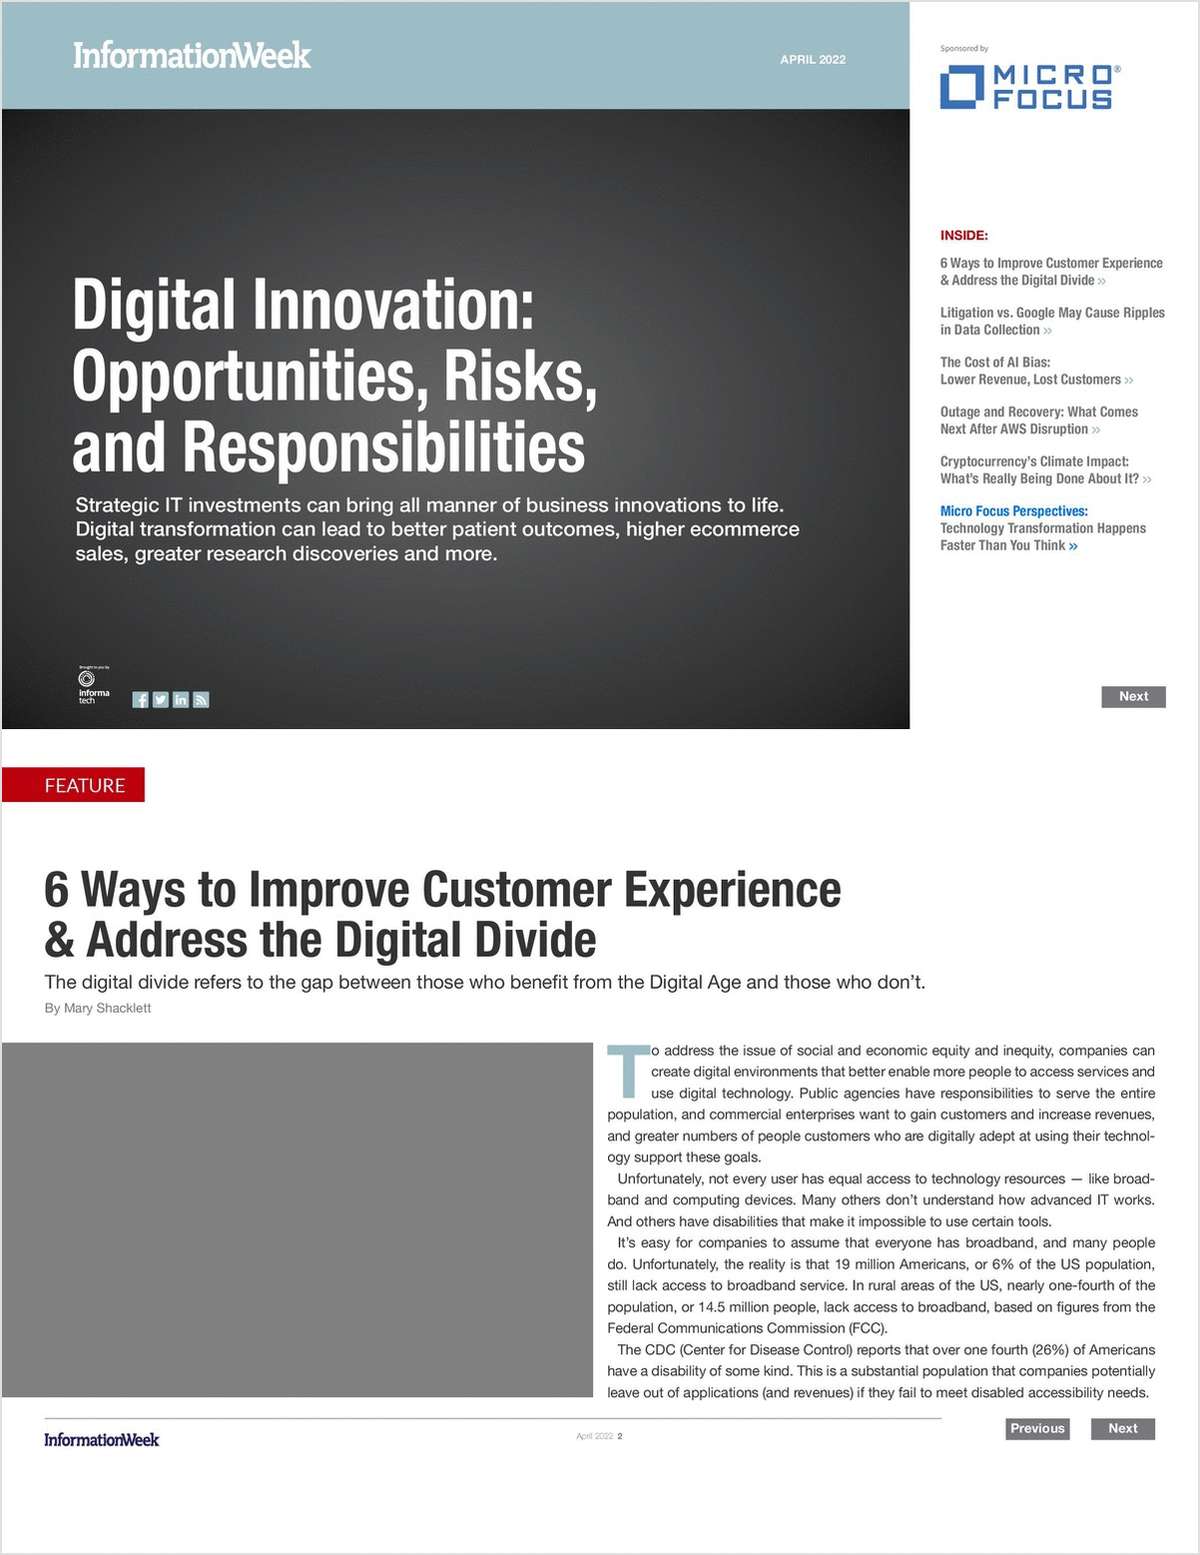 Digital Innovation: Opportunities, Risks, & Responsibilities